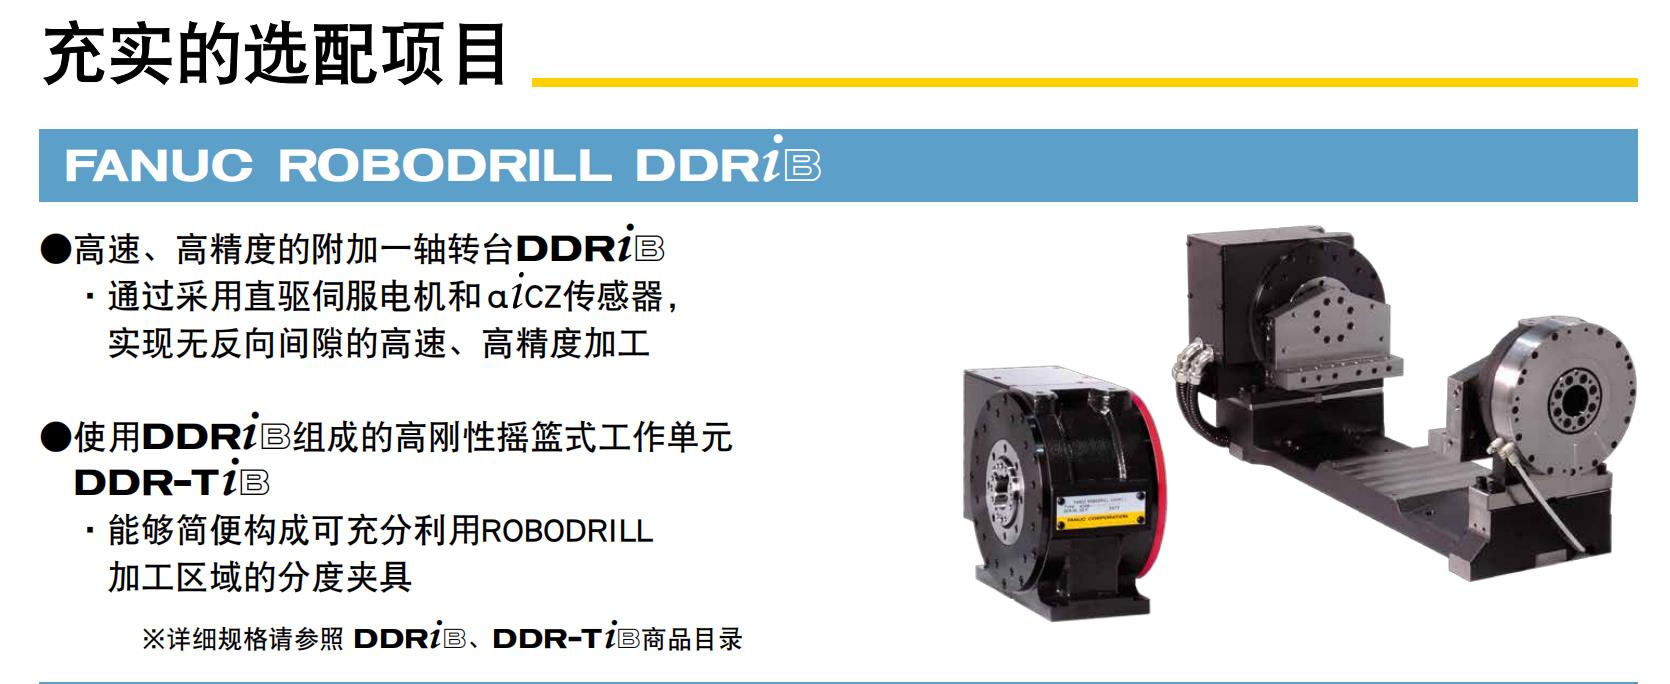 DDR四轴转台.jpg